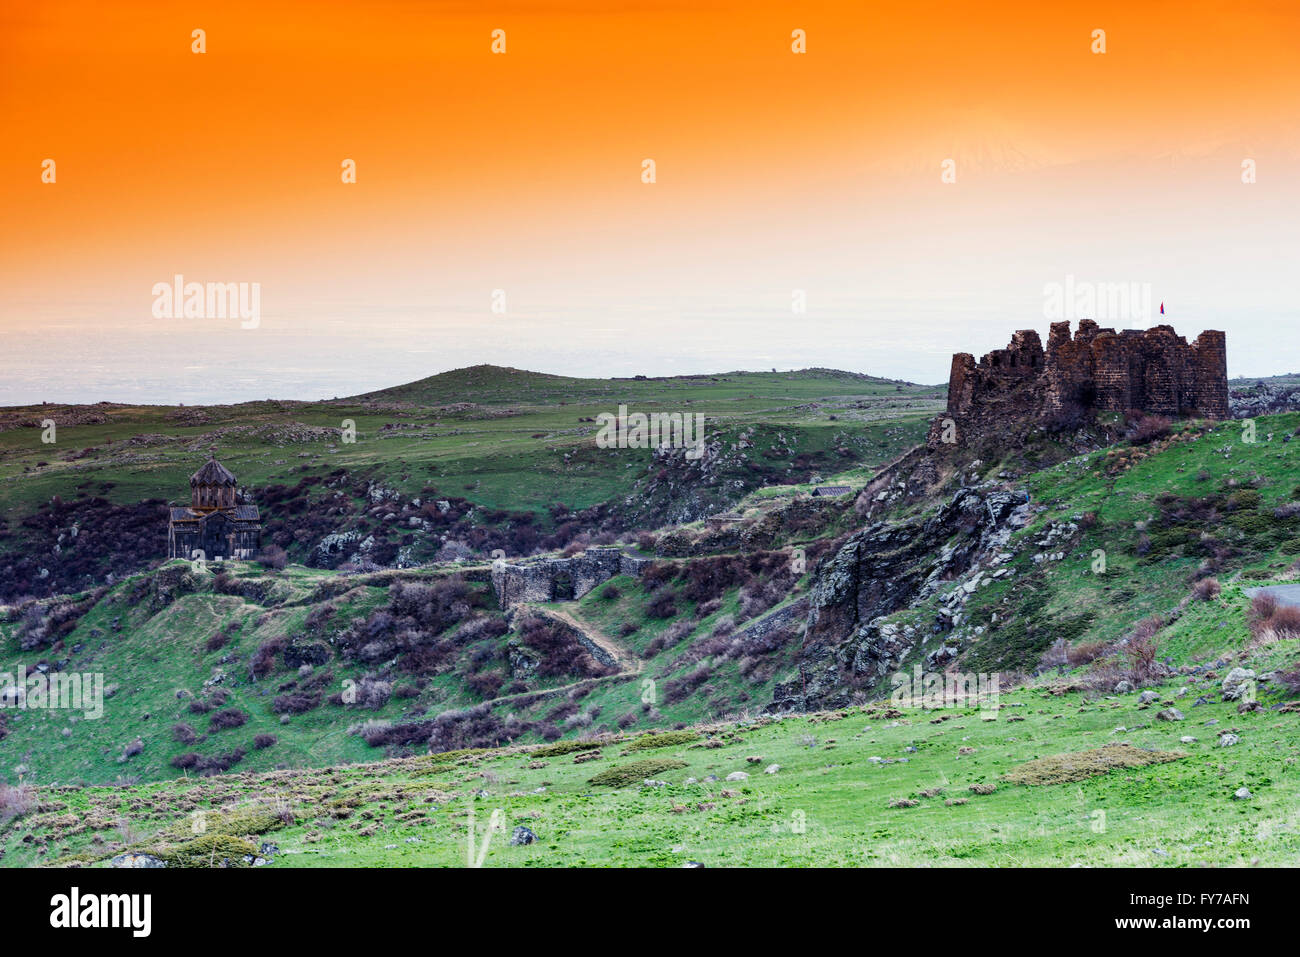 Eurasia, Caucasus region, Armenia, Aragatsotn province, Amberd 7th century fortress on Mt Aragats, Mt Aratat (5137m) in Turkey Stock Photo